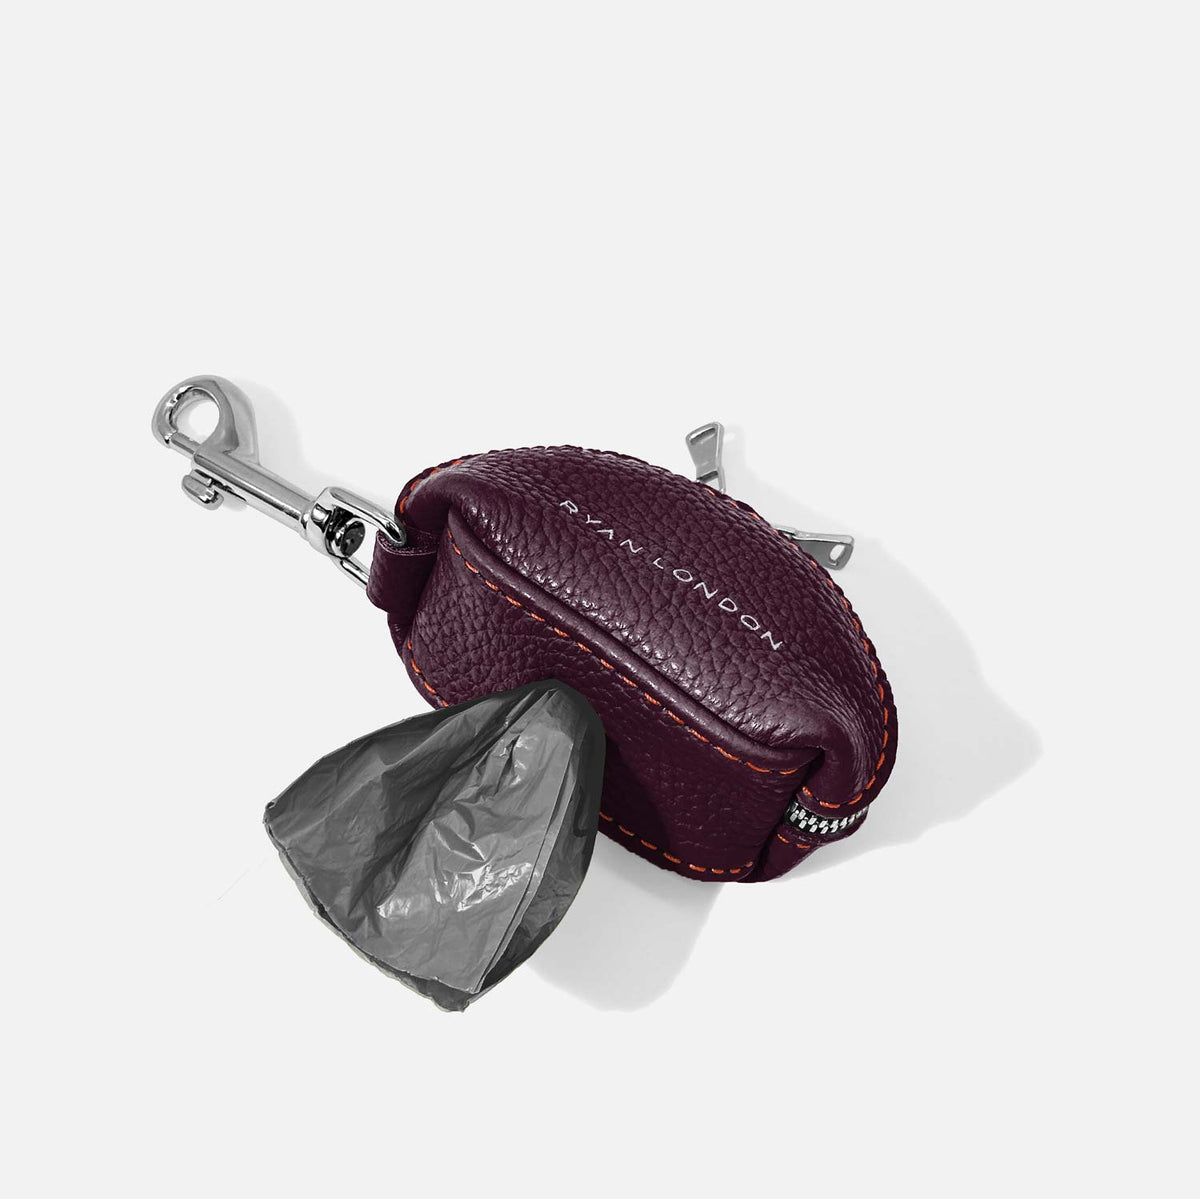 Leather Dog Poop Bag Holder - Dark Purple